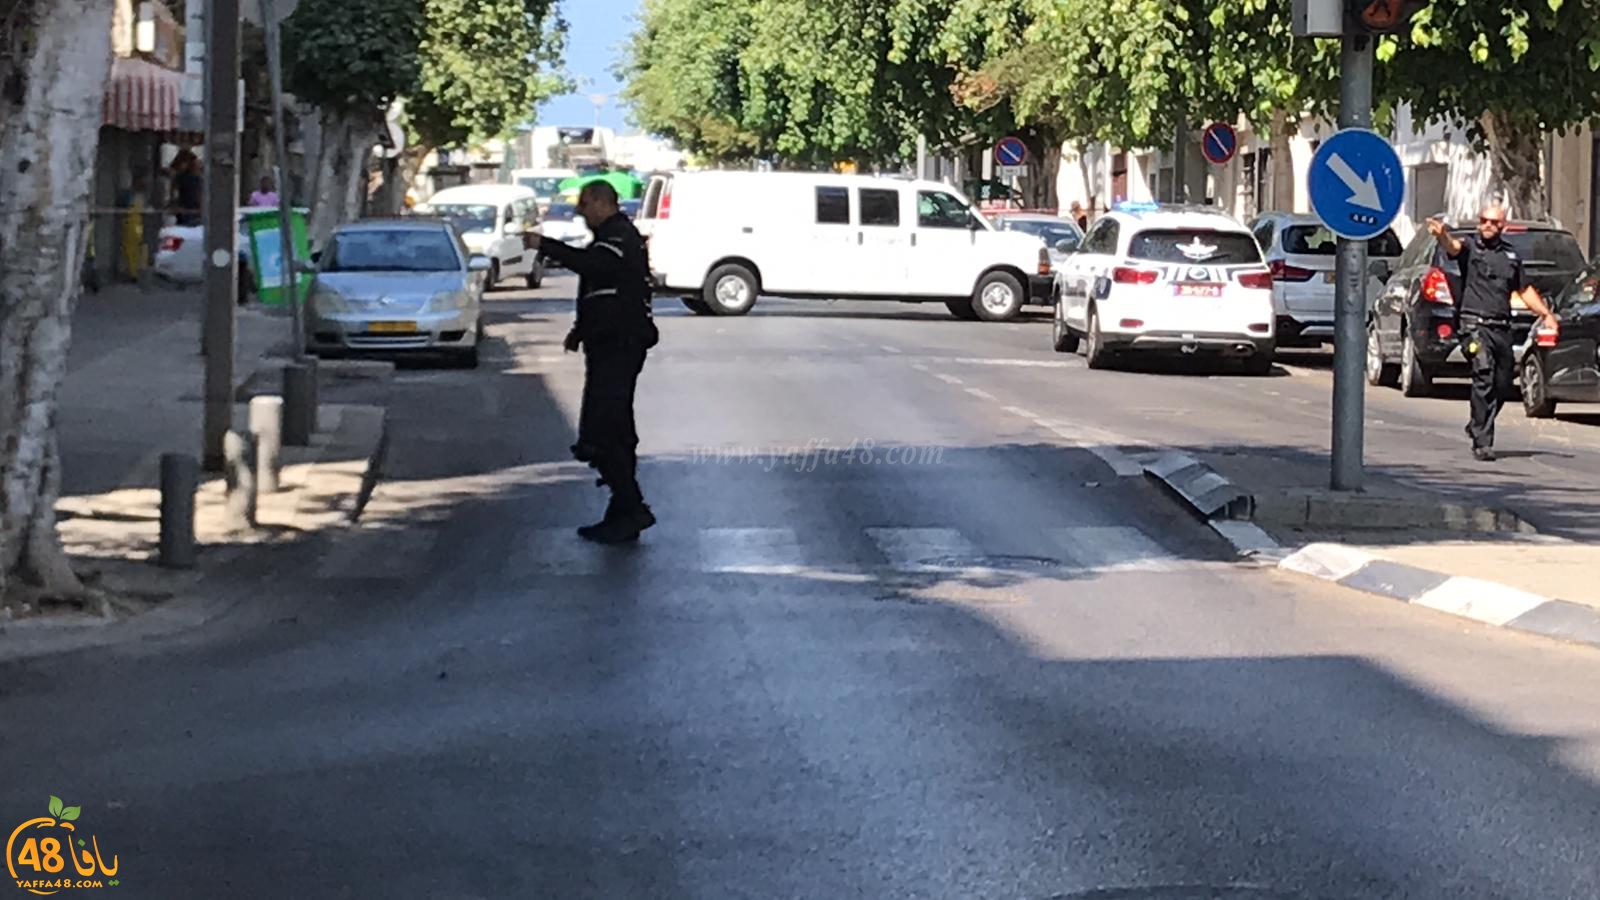  بالصور: الشرطة تُغلق شارع يهودا هيميت بيافا لمعالجة جسم مشبوه